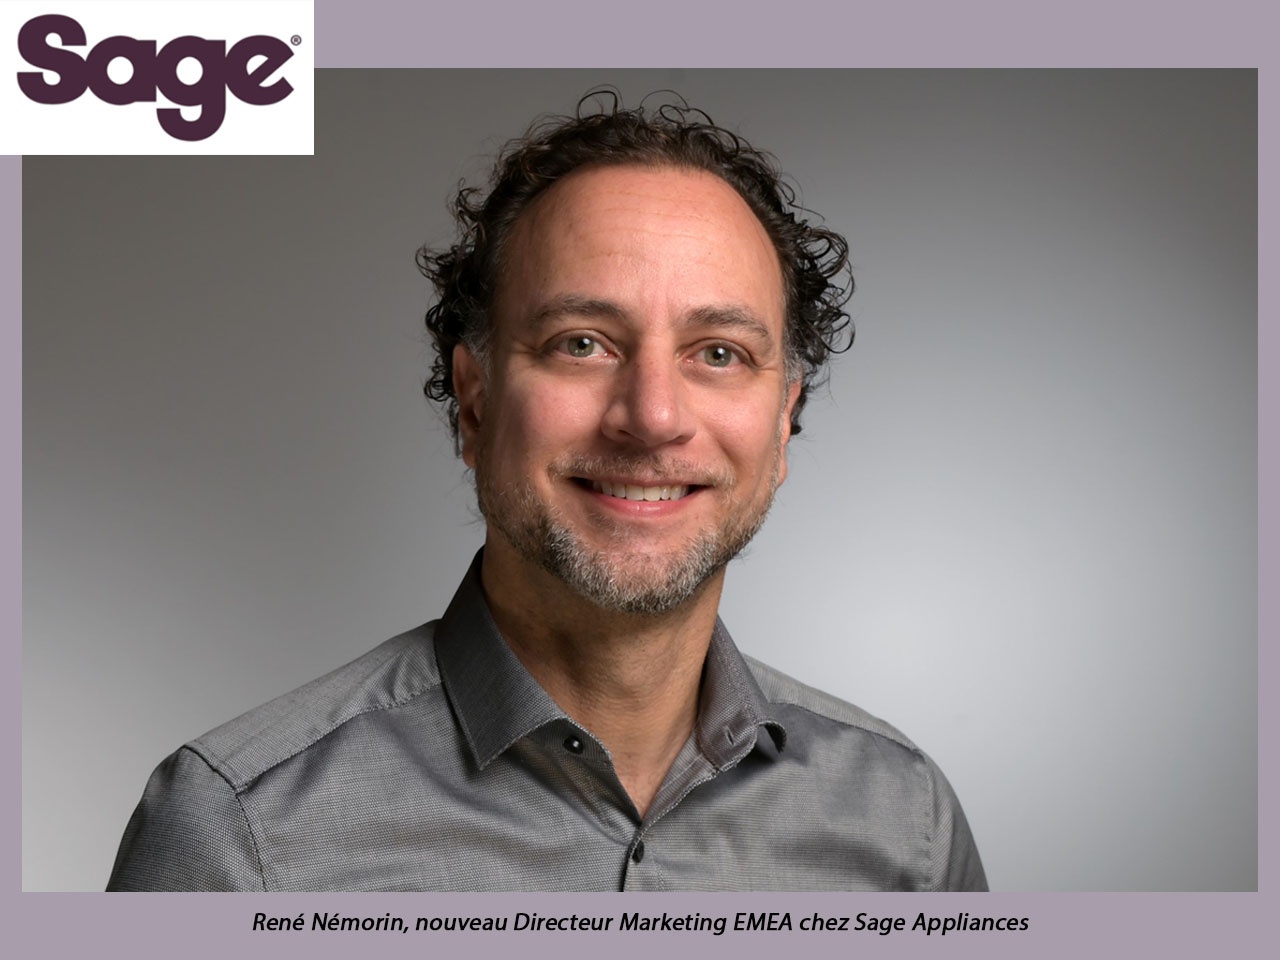 René Némorin est nommé Directeur Marketing EMEA chez Sage Appliances